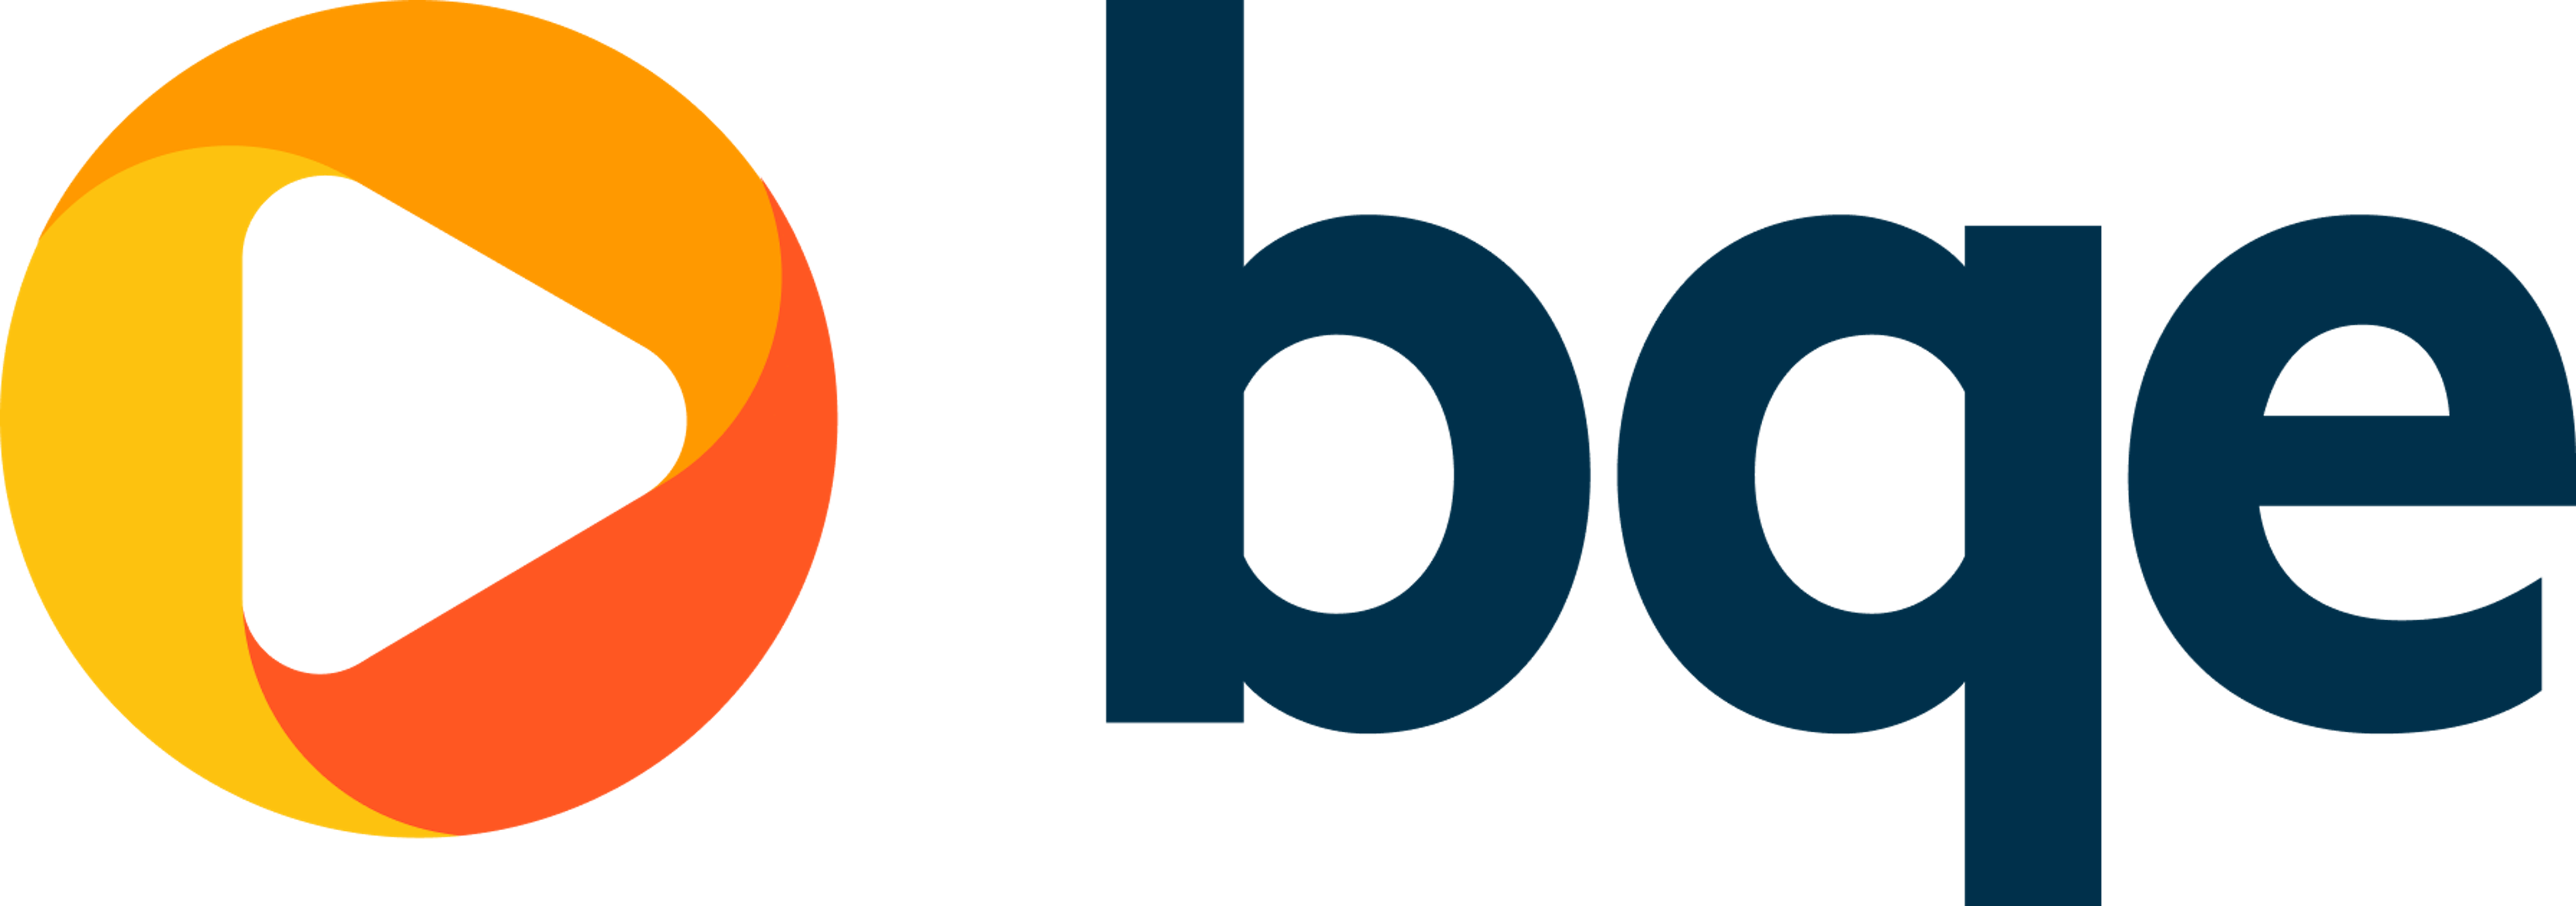 BQE CORE Suite Logo